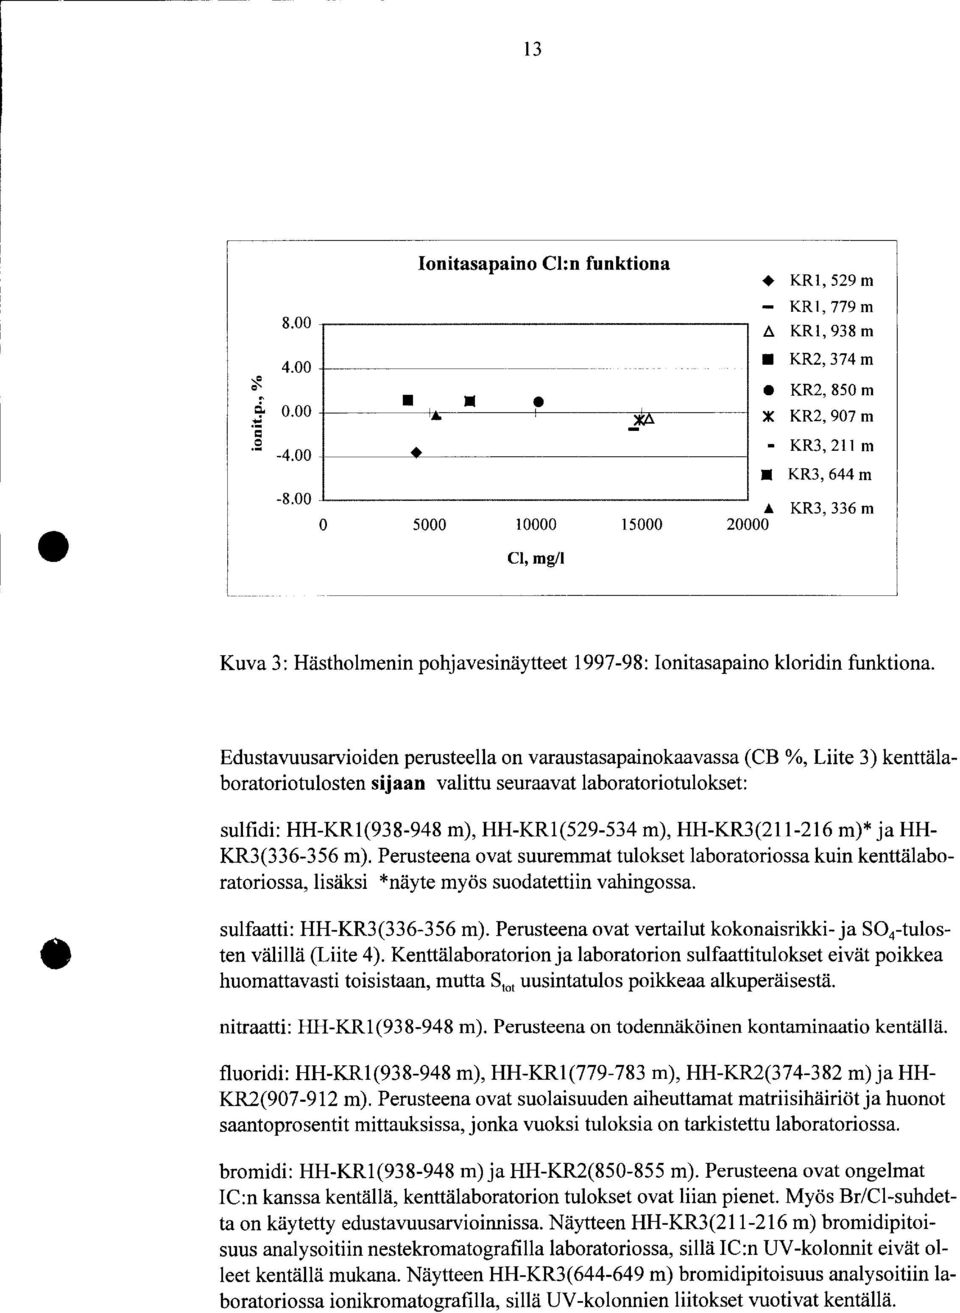 Edustavuusarvioiden perusteella on varaustasapainokaavassa (CB %, Liite ) kenttälaboratoriotulosten sijaan valittu seuraavat laboratoriotulokset sulfidi: HH-KR(98-948 m), HH-KR(529-54 m), HH-KR(2-26